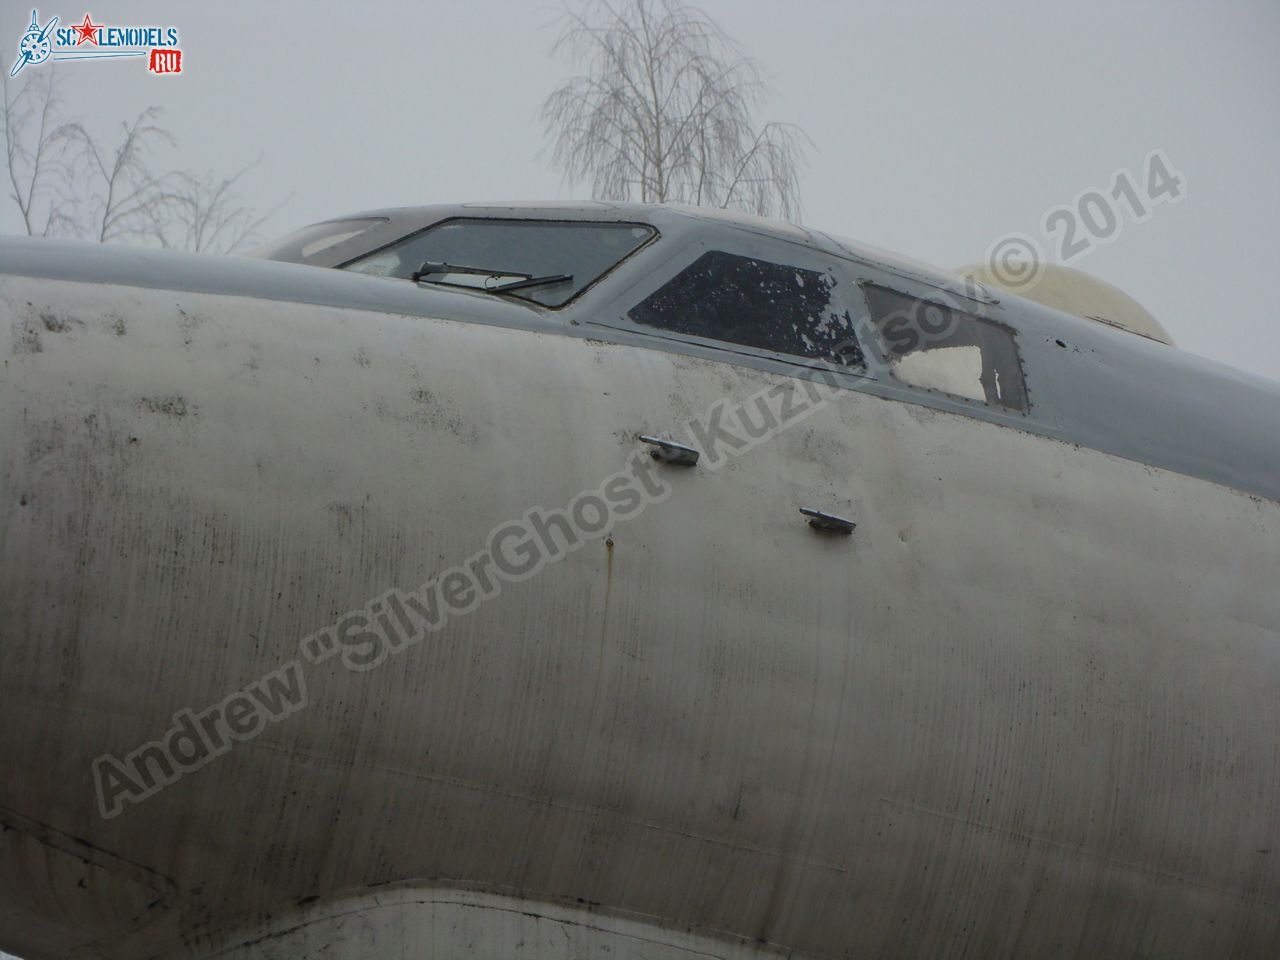 Tu-16_Badger_Smolensk_0004.jpg